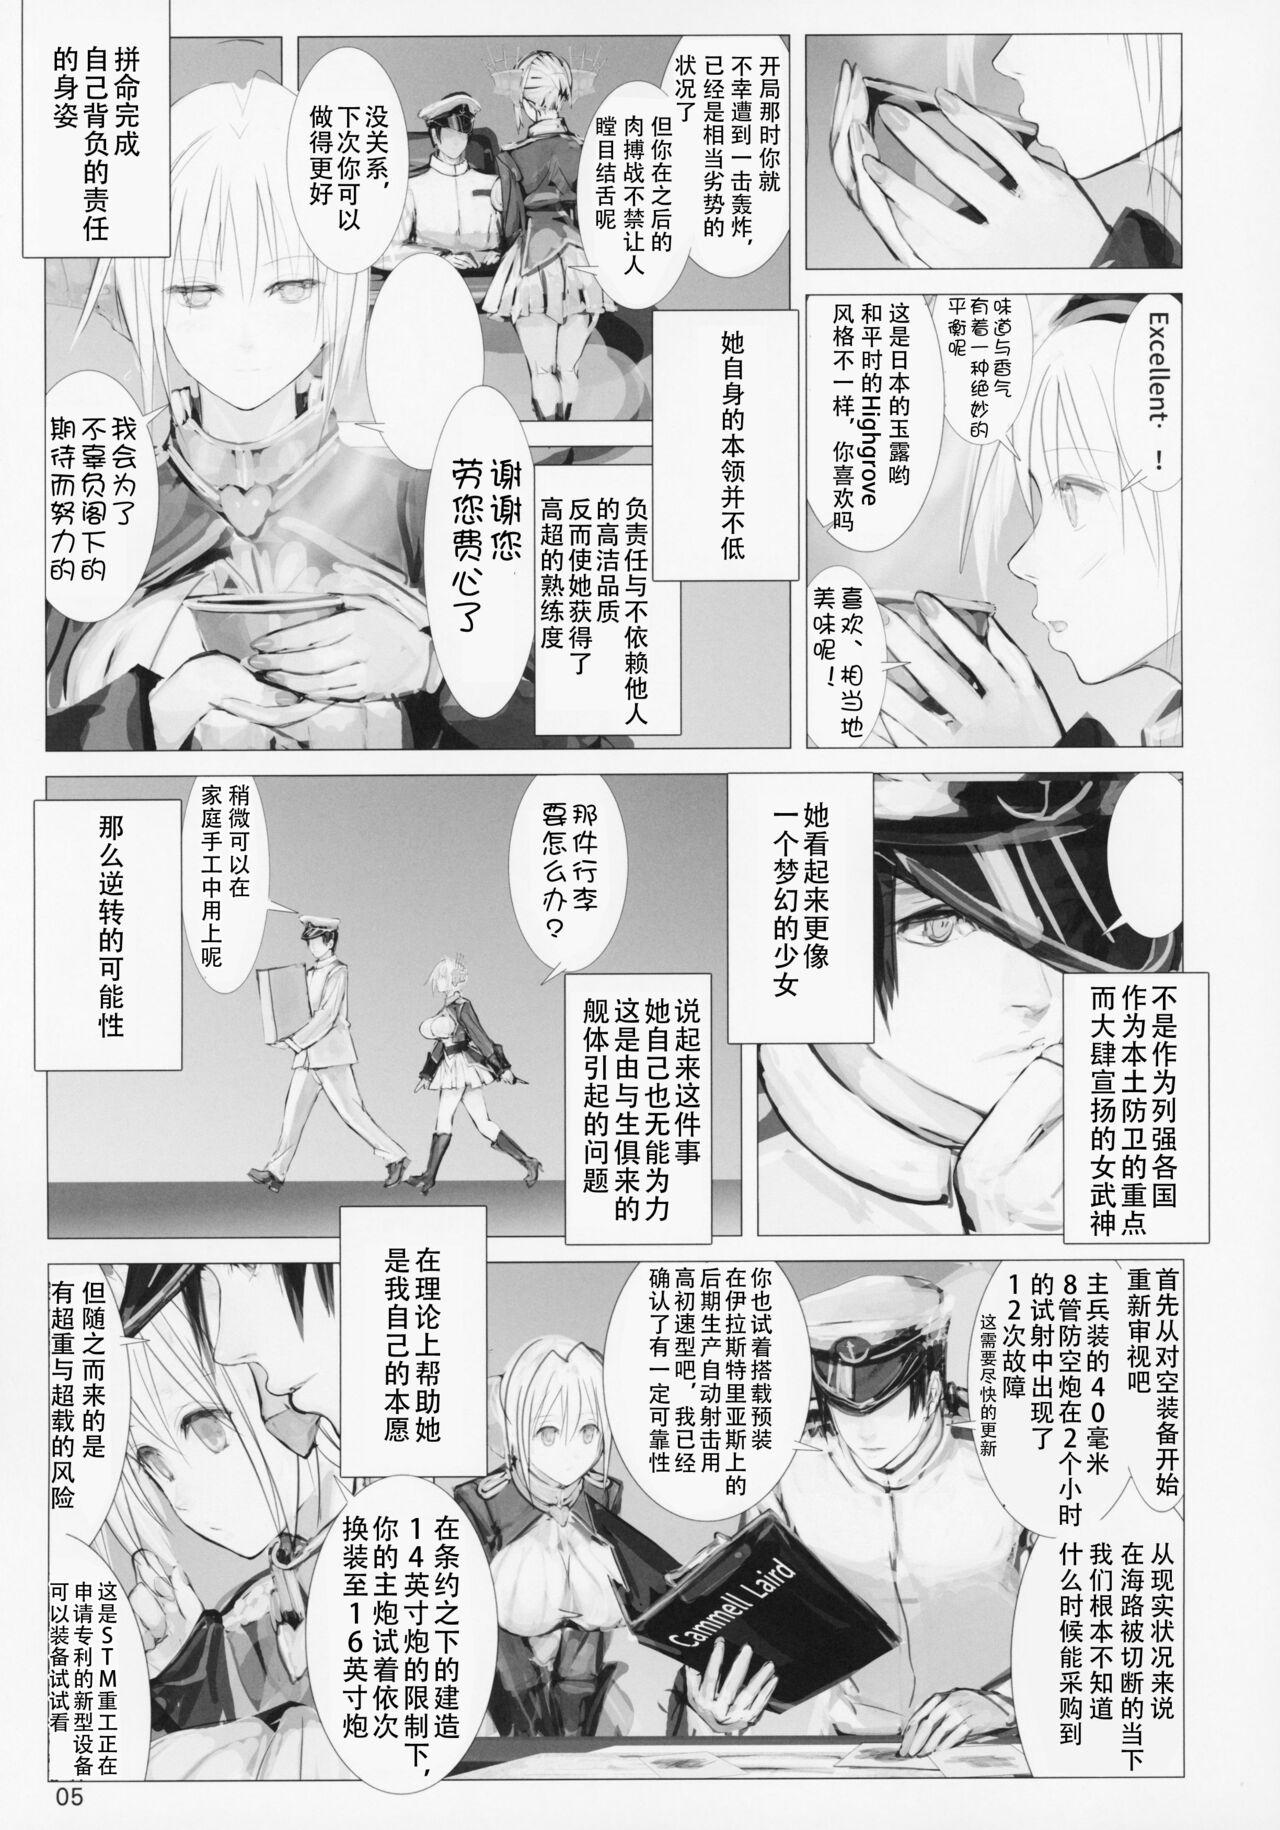 Glamcore Seiyakukan no Oshigoto R ZERO - Warship girls Boots - Page 4